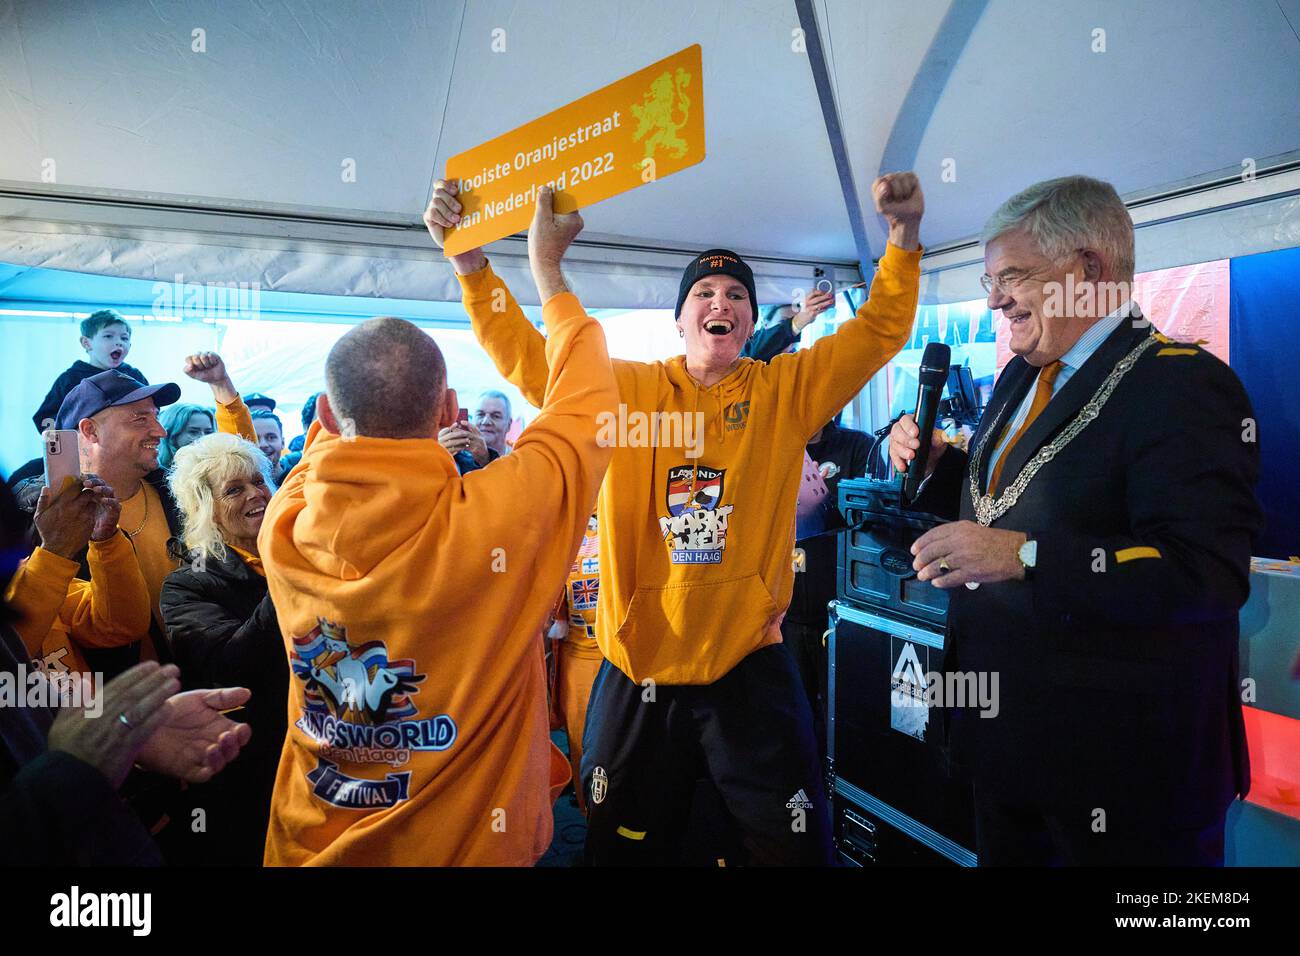 2022-11-13 16:31:58:19 L'AIA - il sindaco Jan van Zanen all'apertura dell'arancione Haagse Marktweg. La squadra arancione apre la Coppa del mondo in Qatar il 21 novembre contro il Senegal. ANP PHIL NIJHUIS olanda fuori - belgio fuori Foto Stock